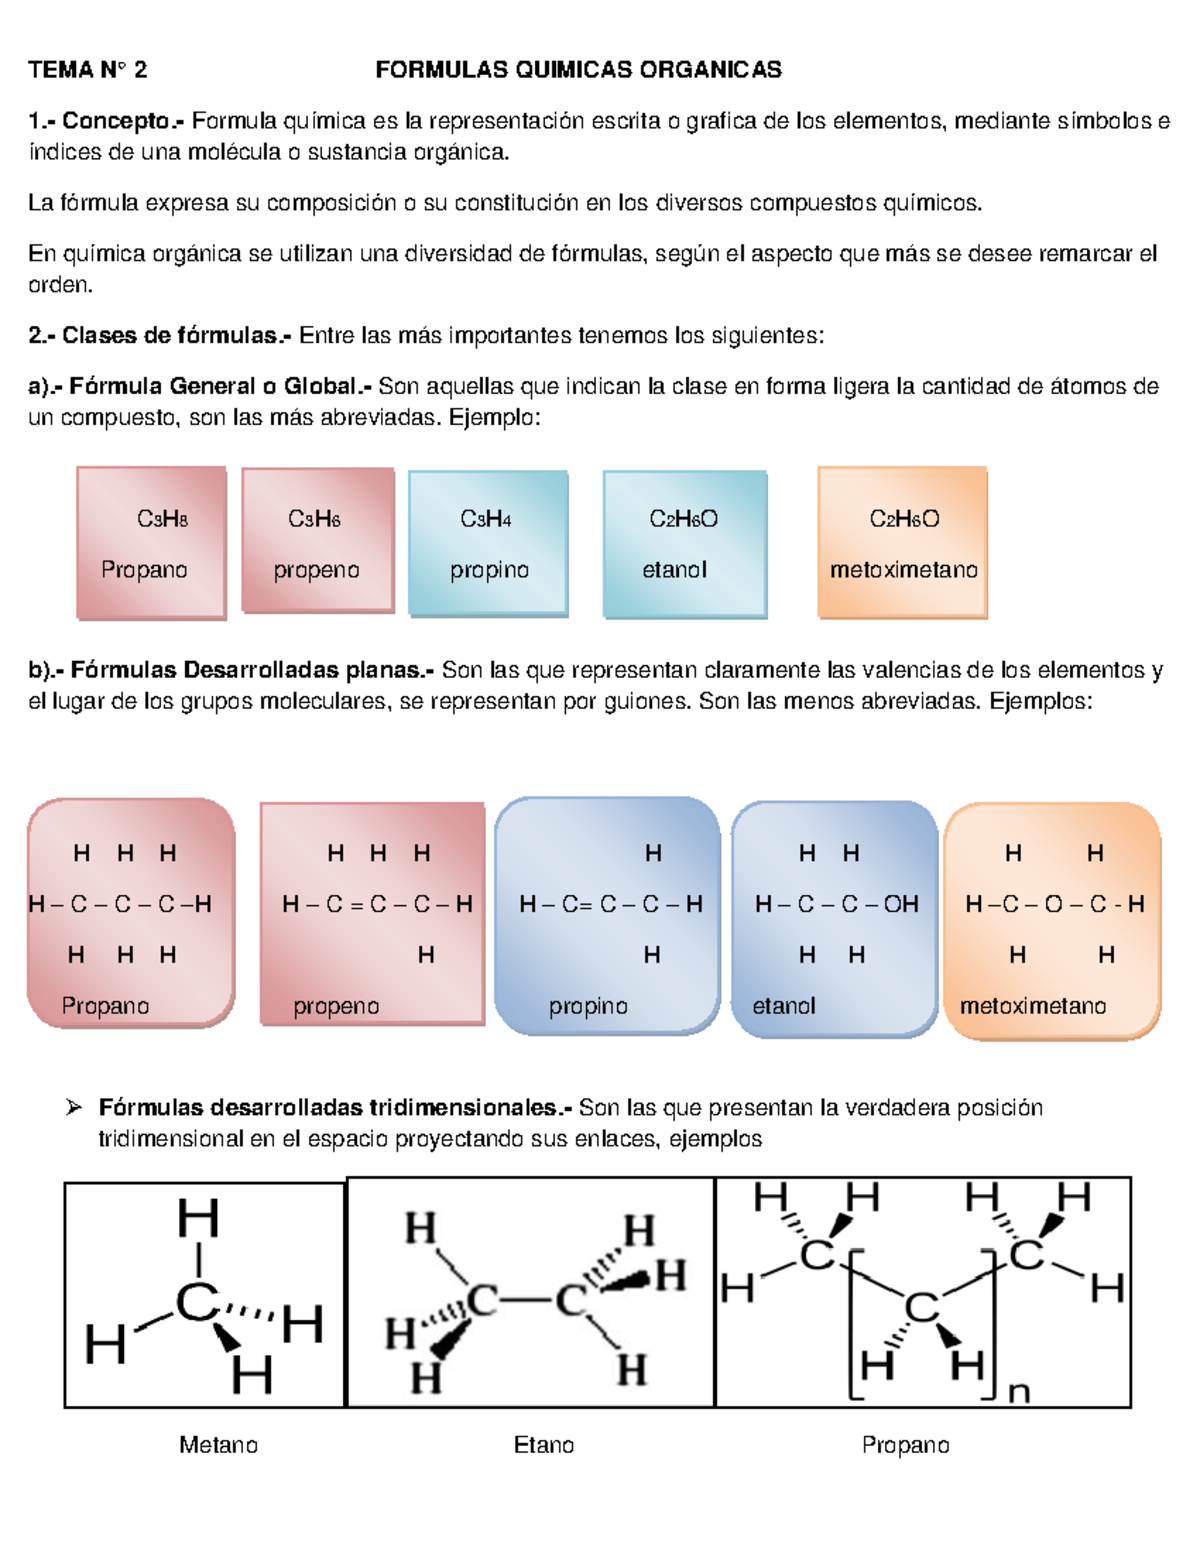 Formulas Organicas Tema N° 2 Formulas Quimicas Organicas 1 Concepto Formula Química Es La